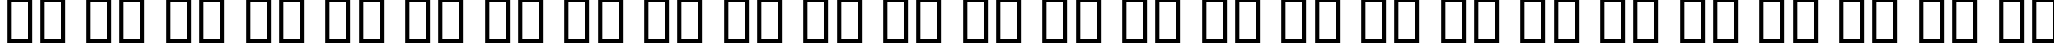 Пример написания английского алфавита шрифтом B Zaman